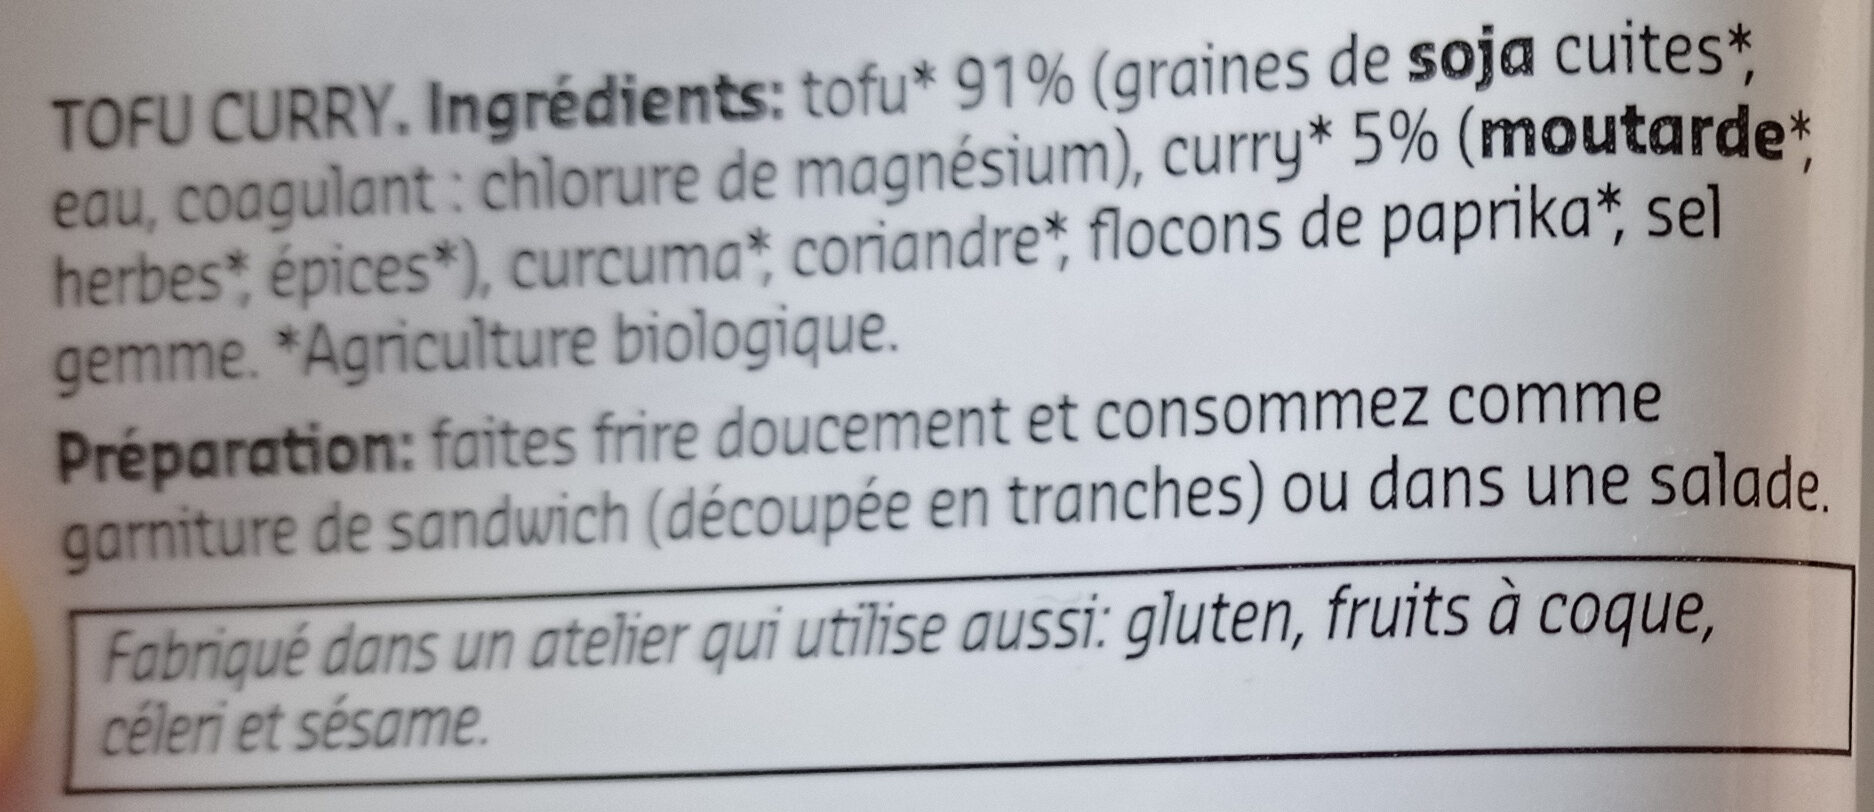 Tofu Curry - Ingredients - fr